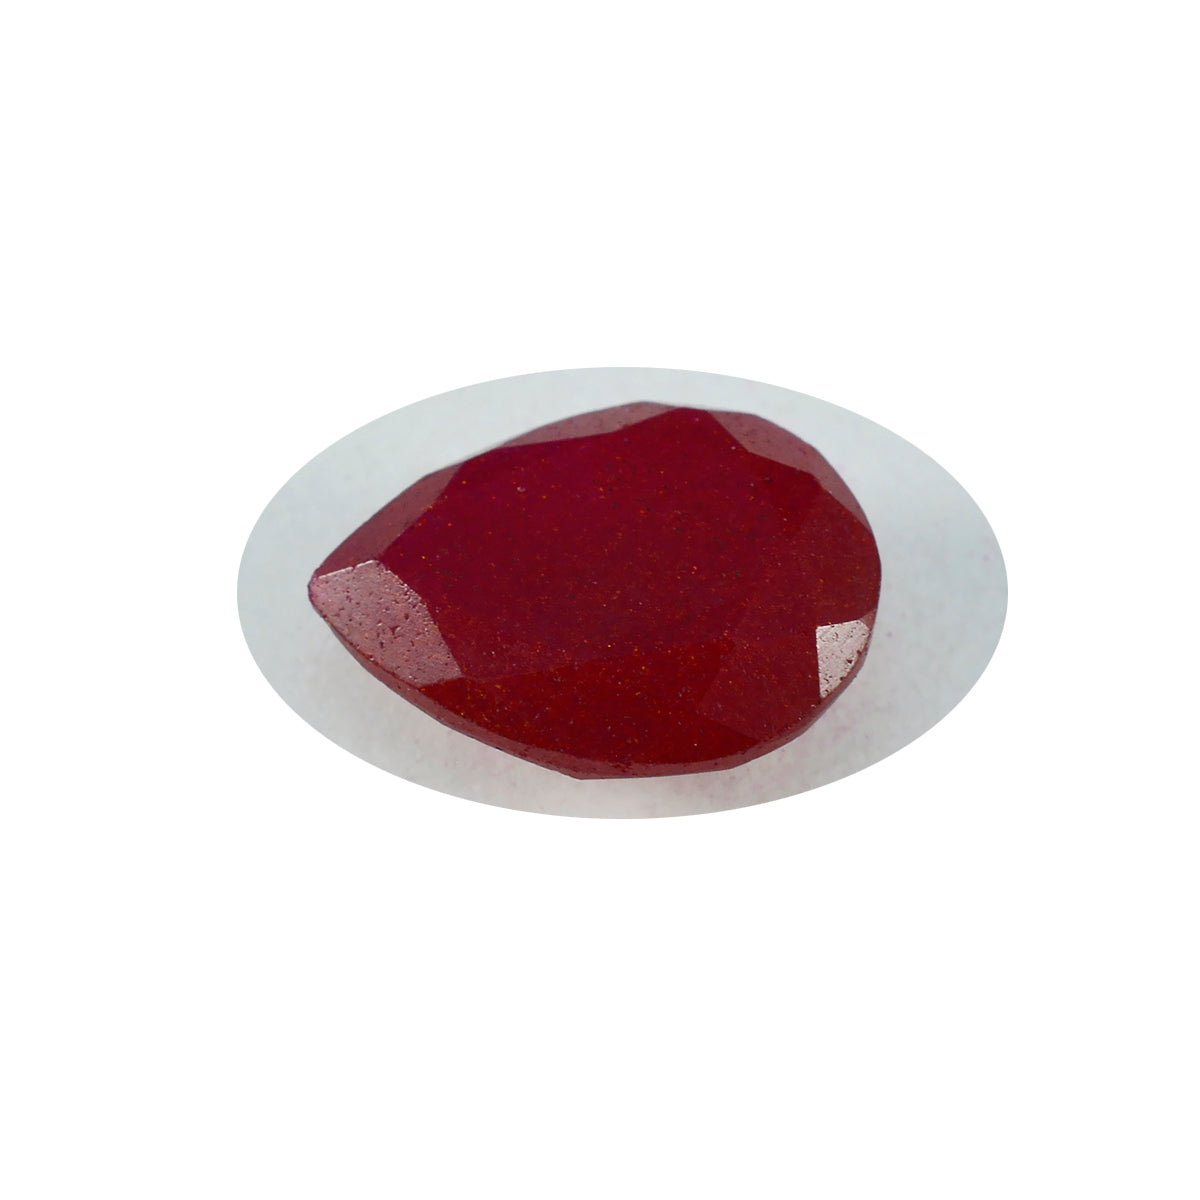 Riyogems 1 pieza de jaspe rojo auténtico facetado de 3x3 mm, forma redonda, piedra preciosa suelta de maravillosa calidad